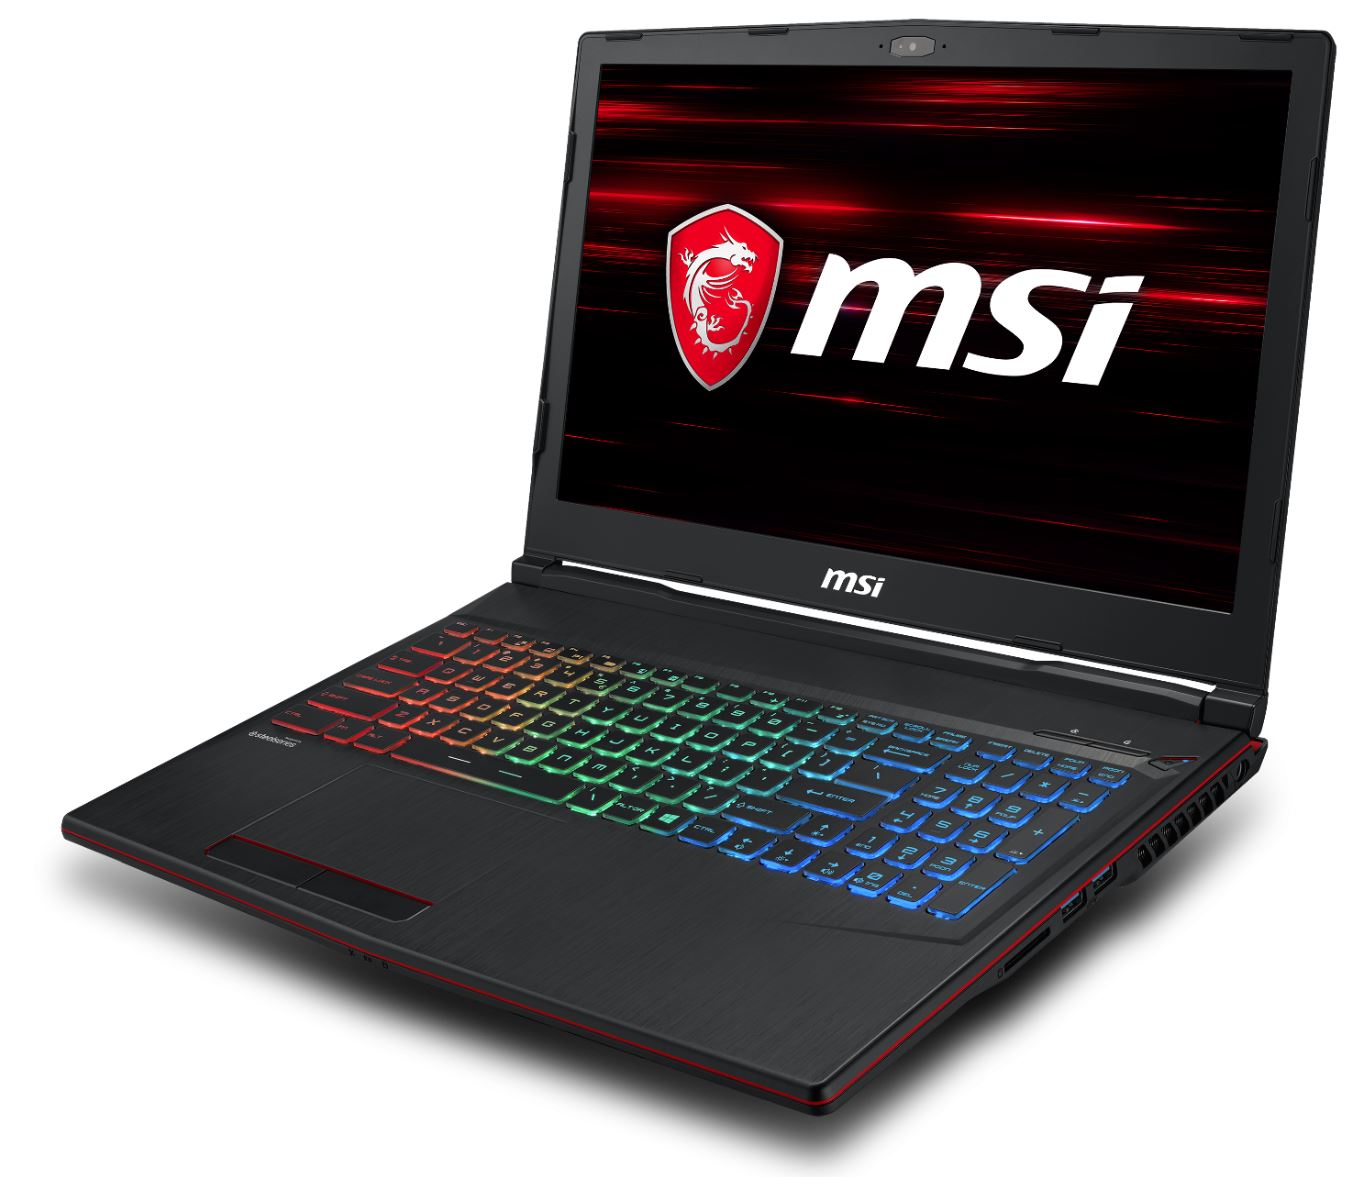 MSI GL63 Ordinateur portable PC Gaming 256 Go SSD + 1 To HDD - 6 Core  i7-8750H - 8 Go de RAM DDR4 - Geforce GTX1050ti - 120 Hz 15,6 IPS LCD  (Noir - Rétroéclairage rouge) : : Électronique